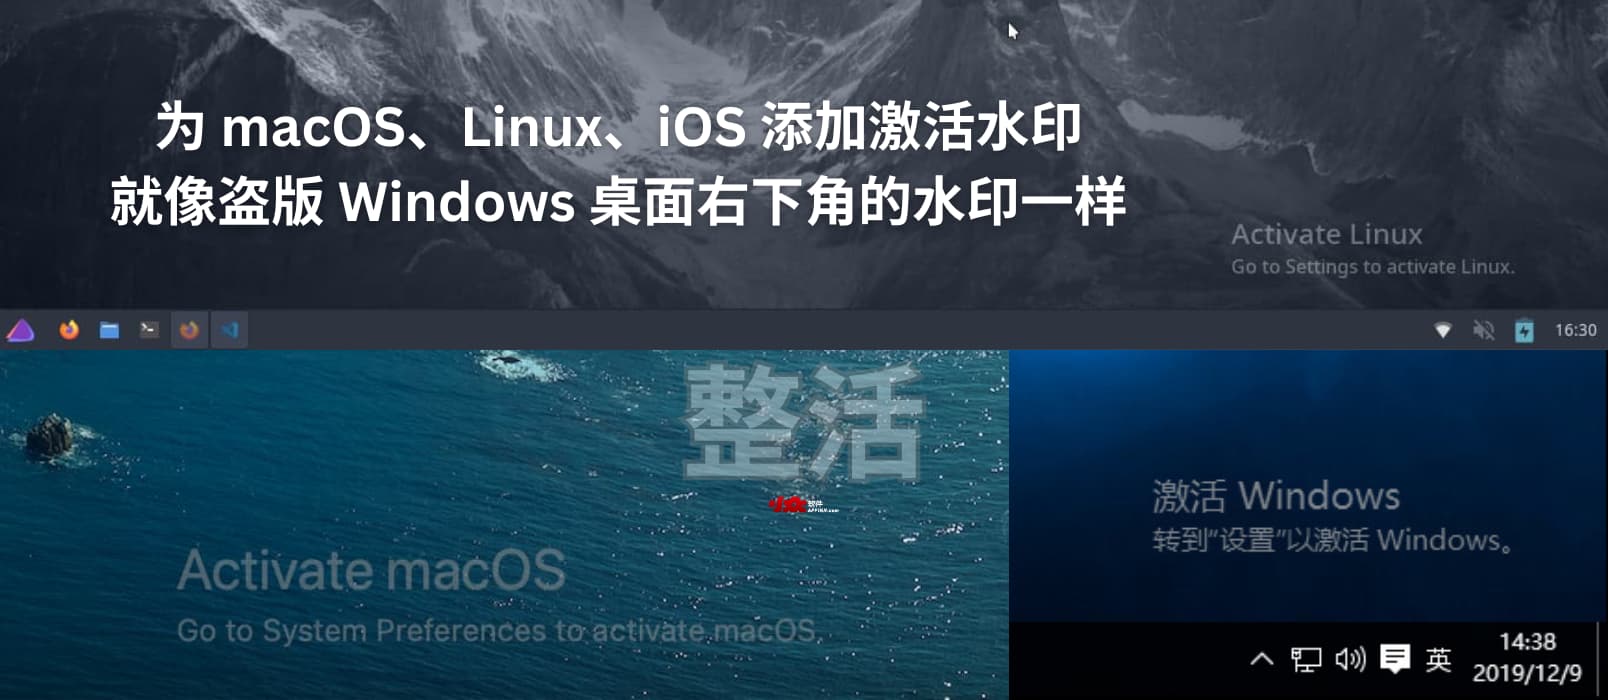 整活：为 macOS、Linux、iOS 添加激活水印，就像盗版 Windows 桌面右下角的水印一样